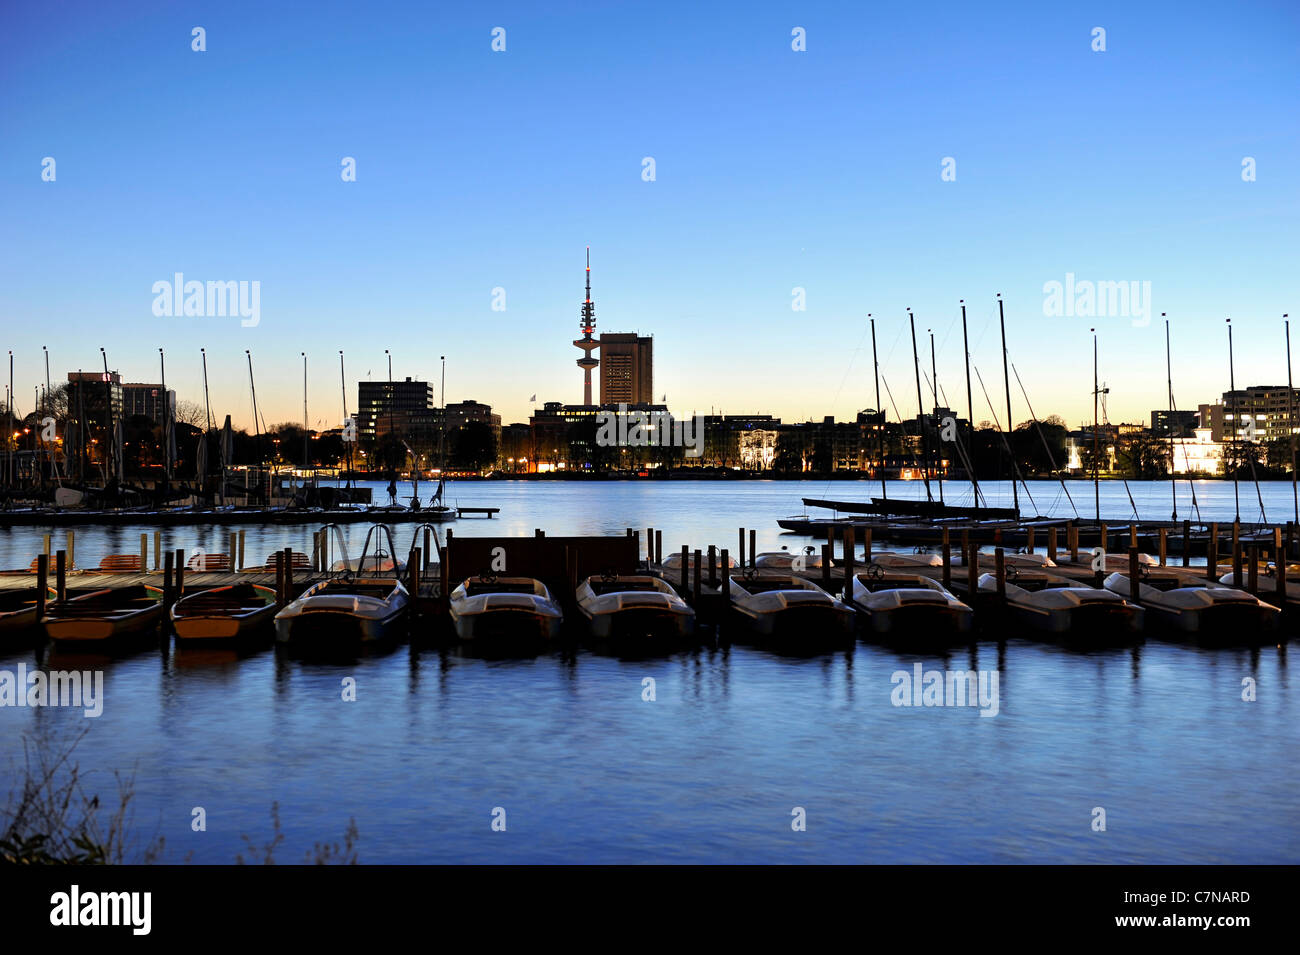 Barche a vela, i montanti con illuminazione posteriore al tramonto sull'esterno lago Alster, città anseatica di Amburgo, Germania, Europa Foto Stock